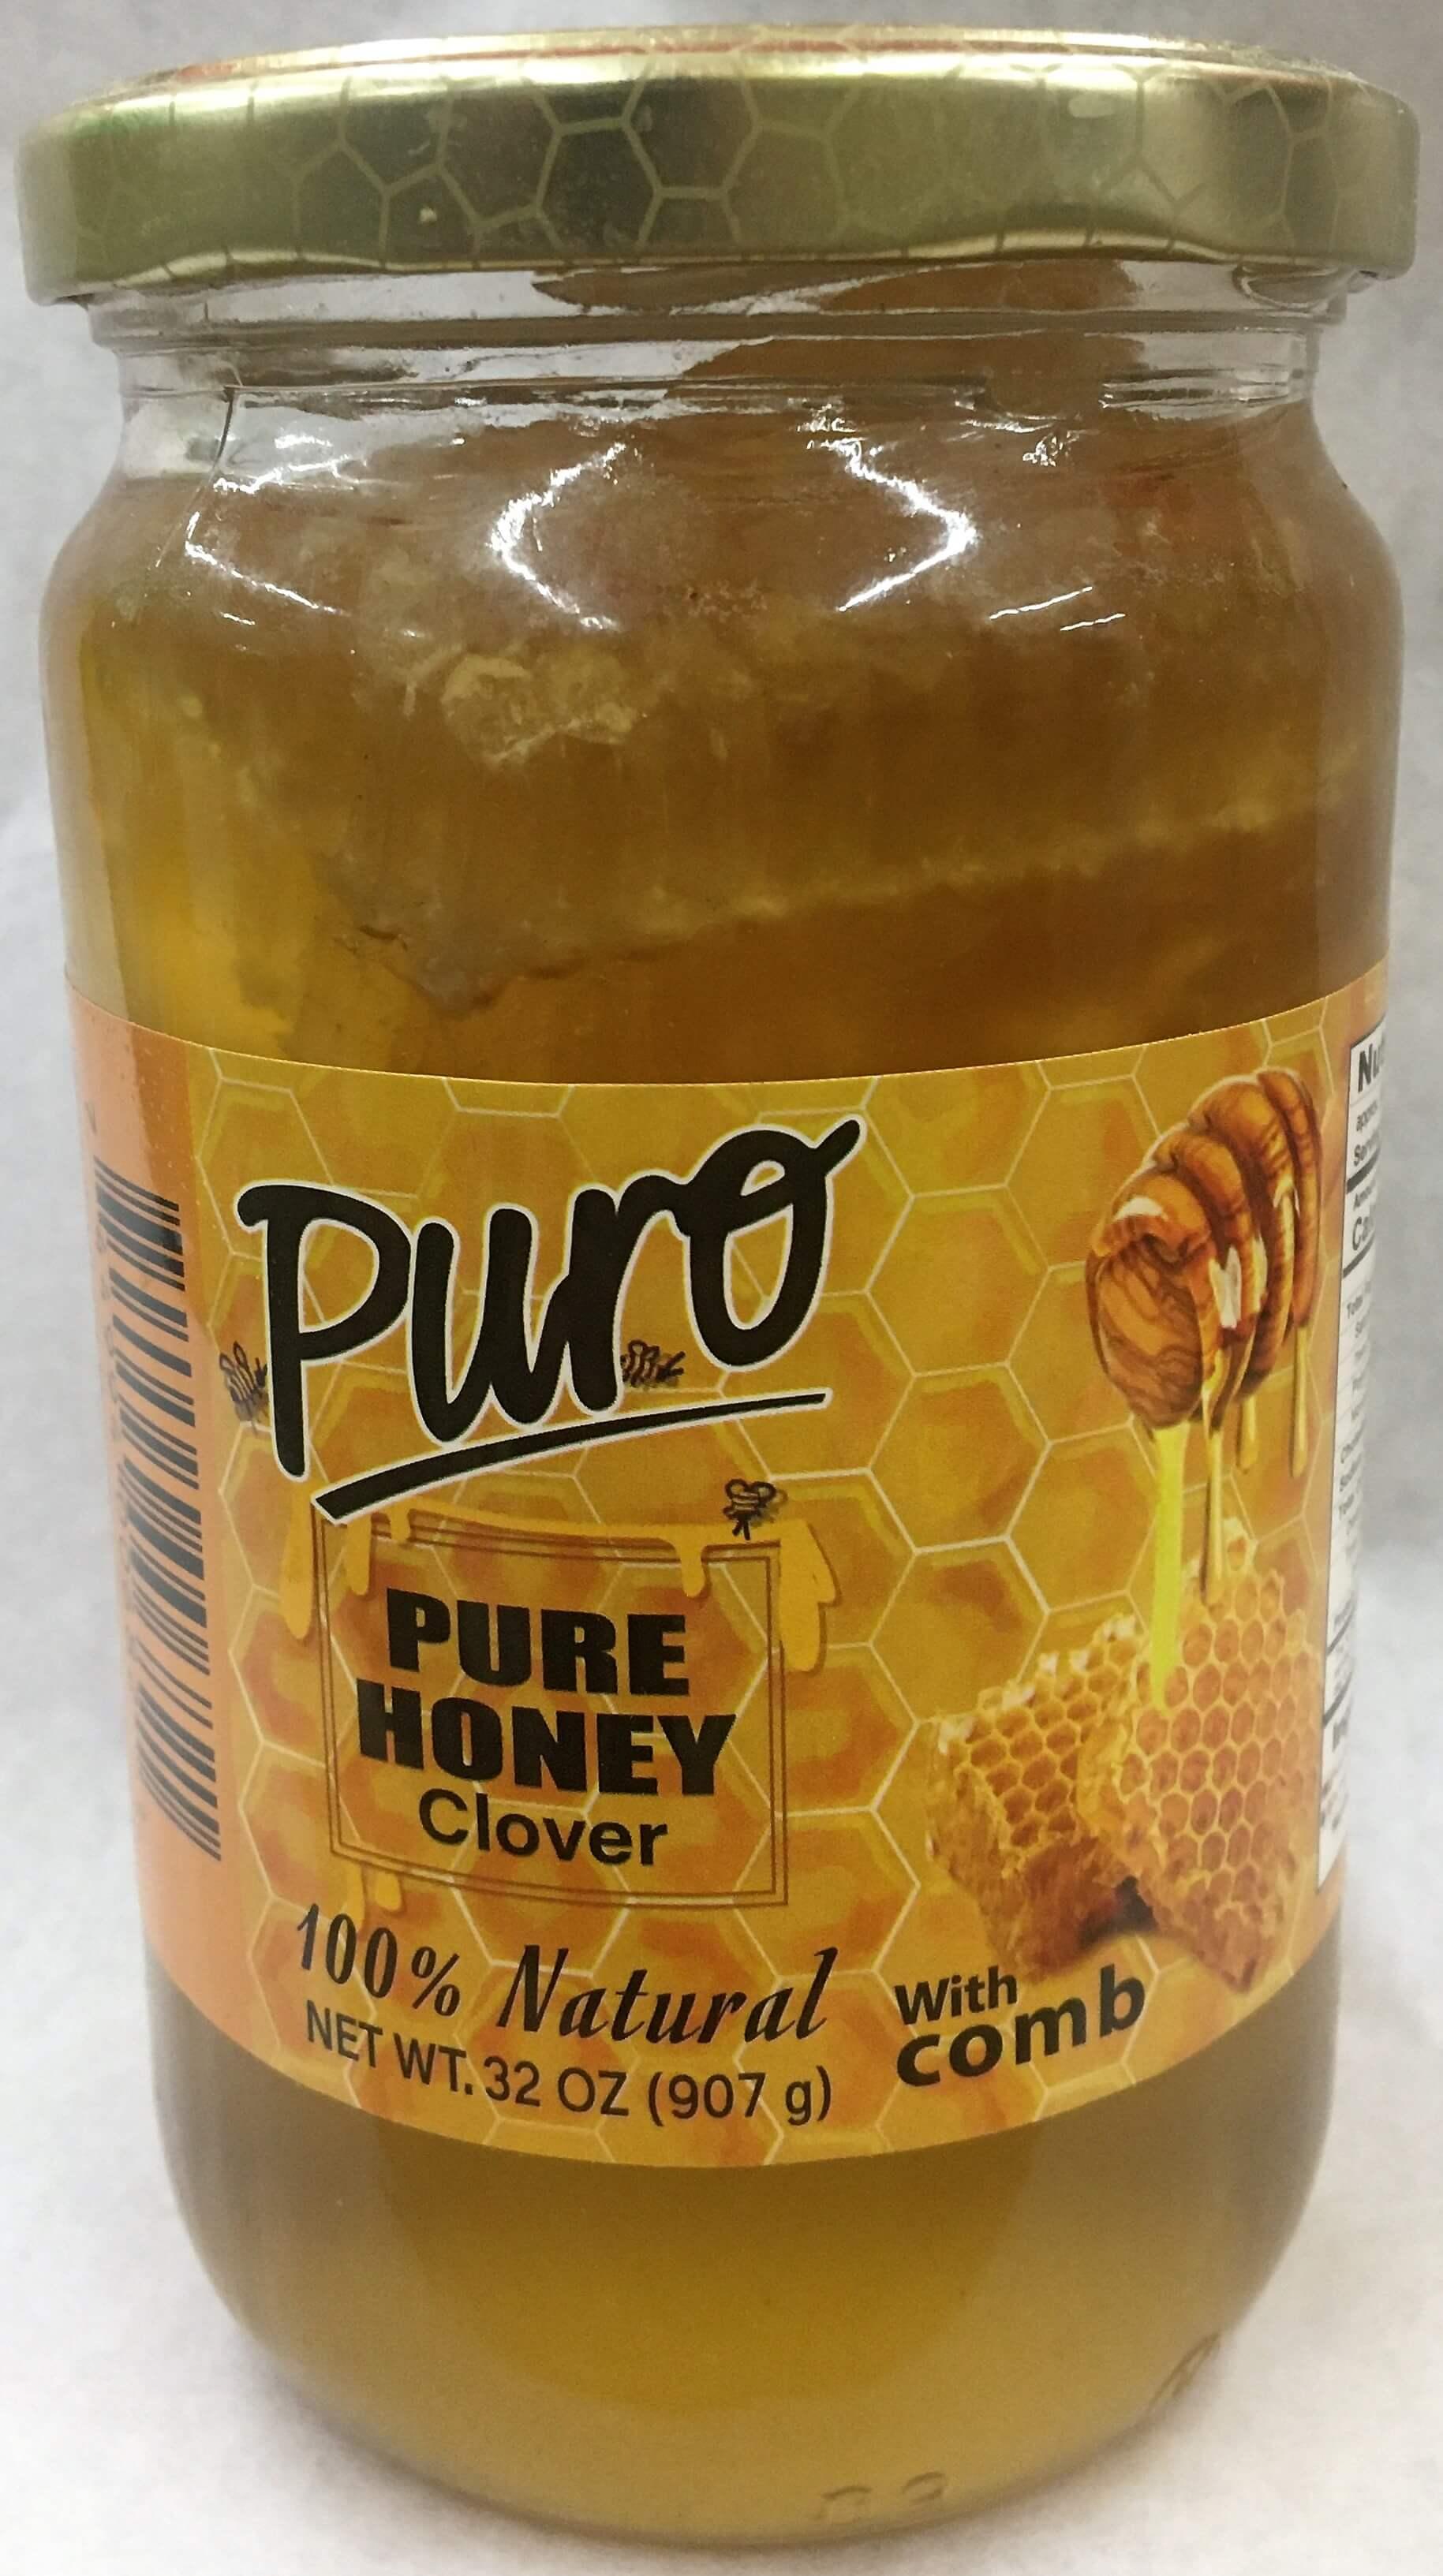 Puro - Pure Honey Clover with Comb 32 oz